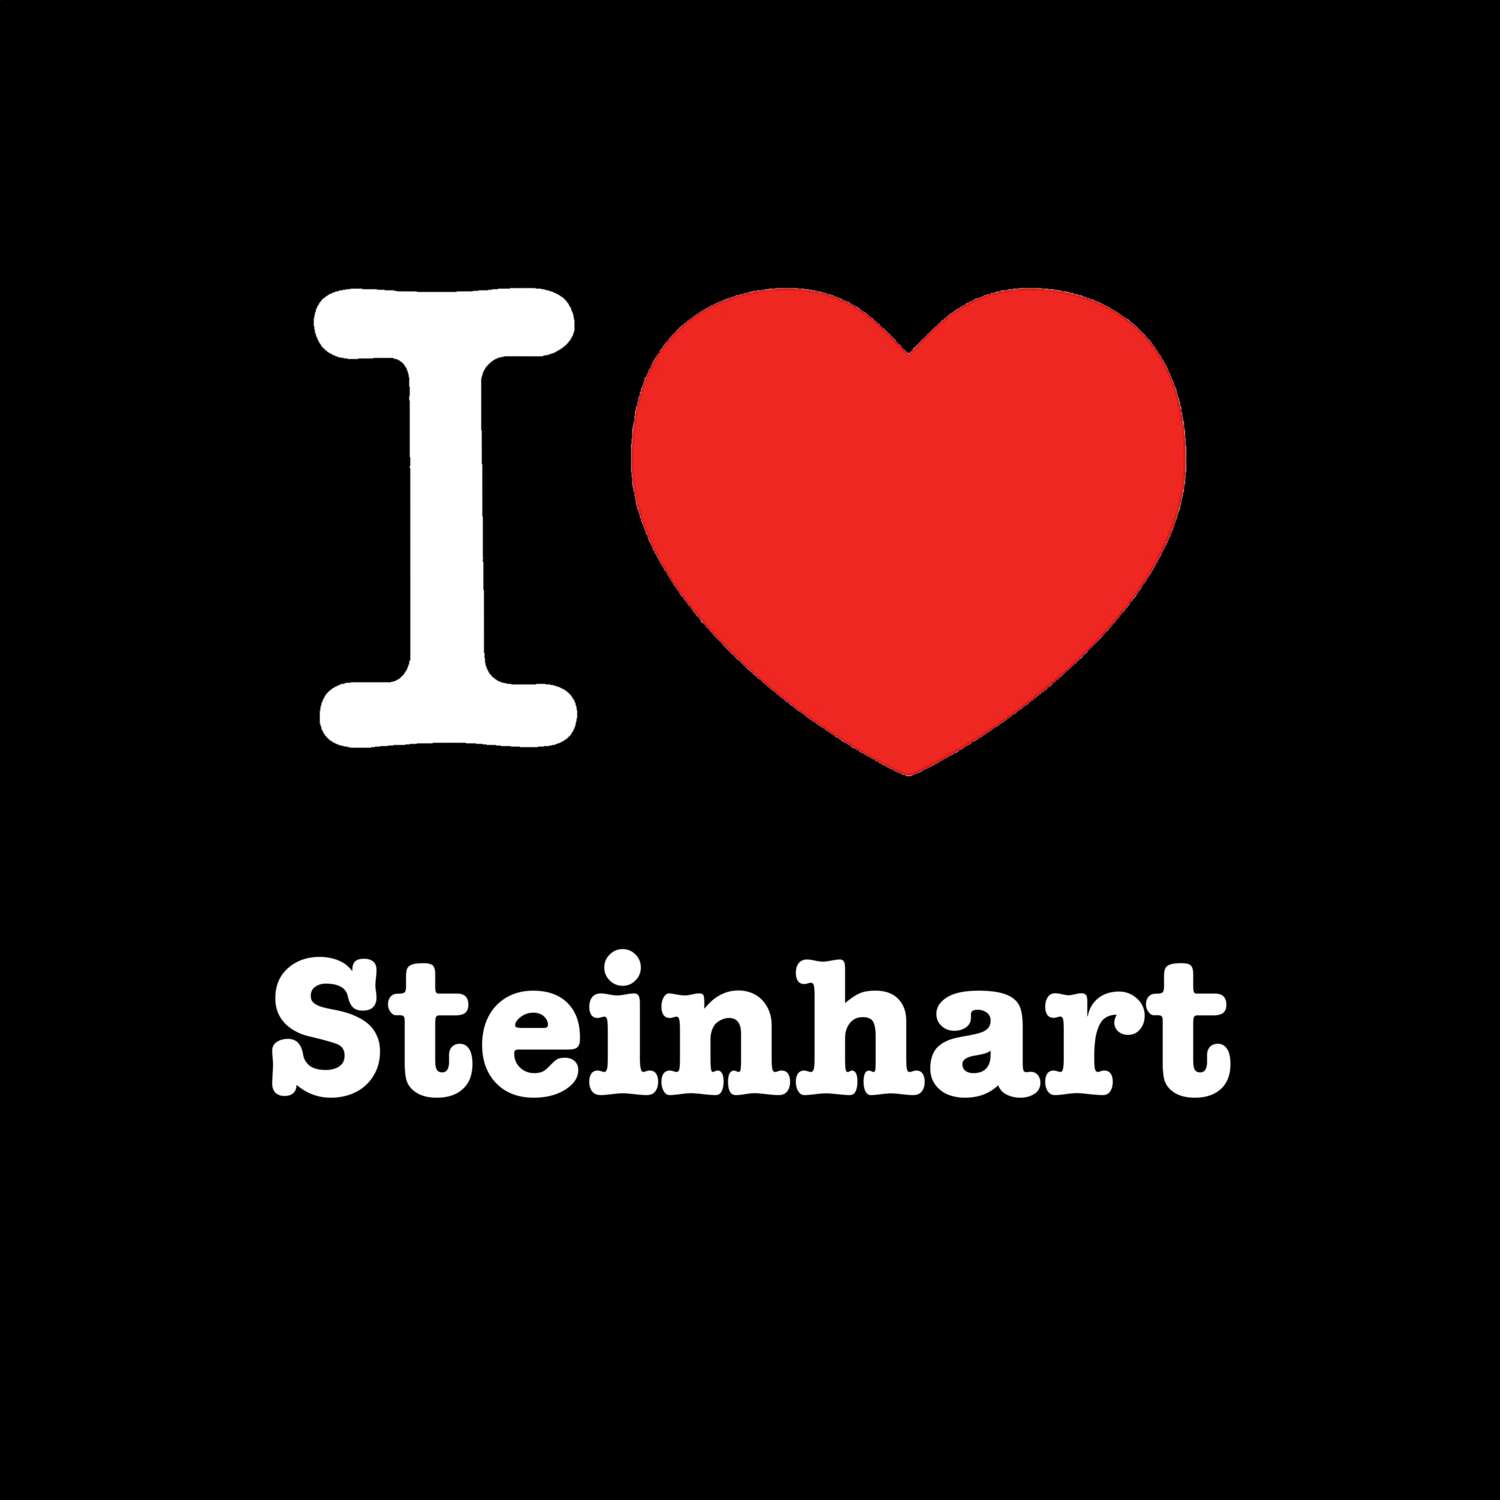 Steinhart T-Shirt »I love«